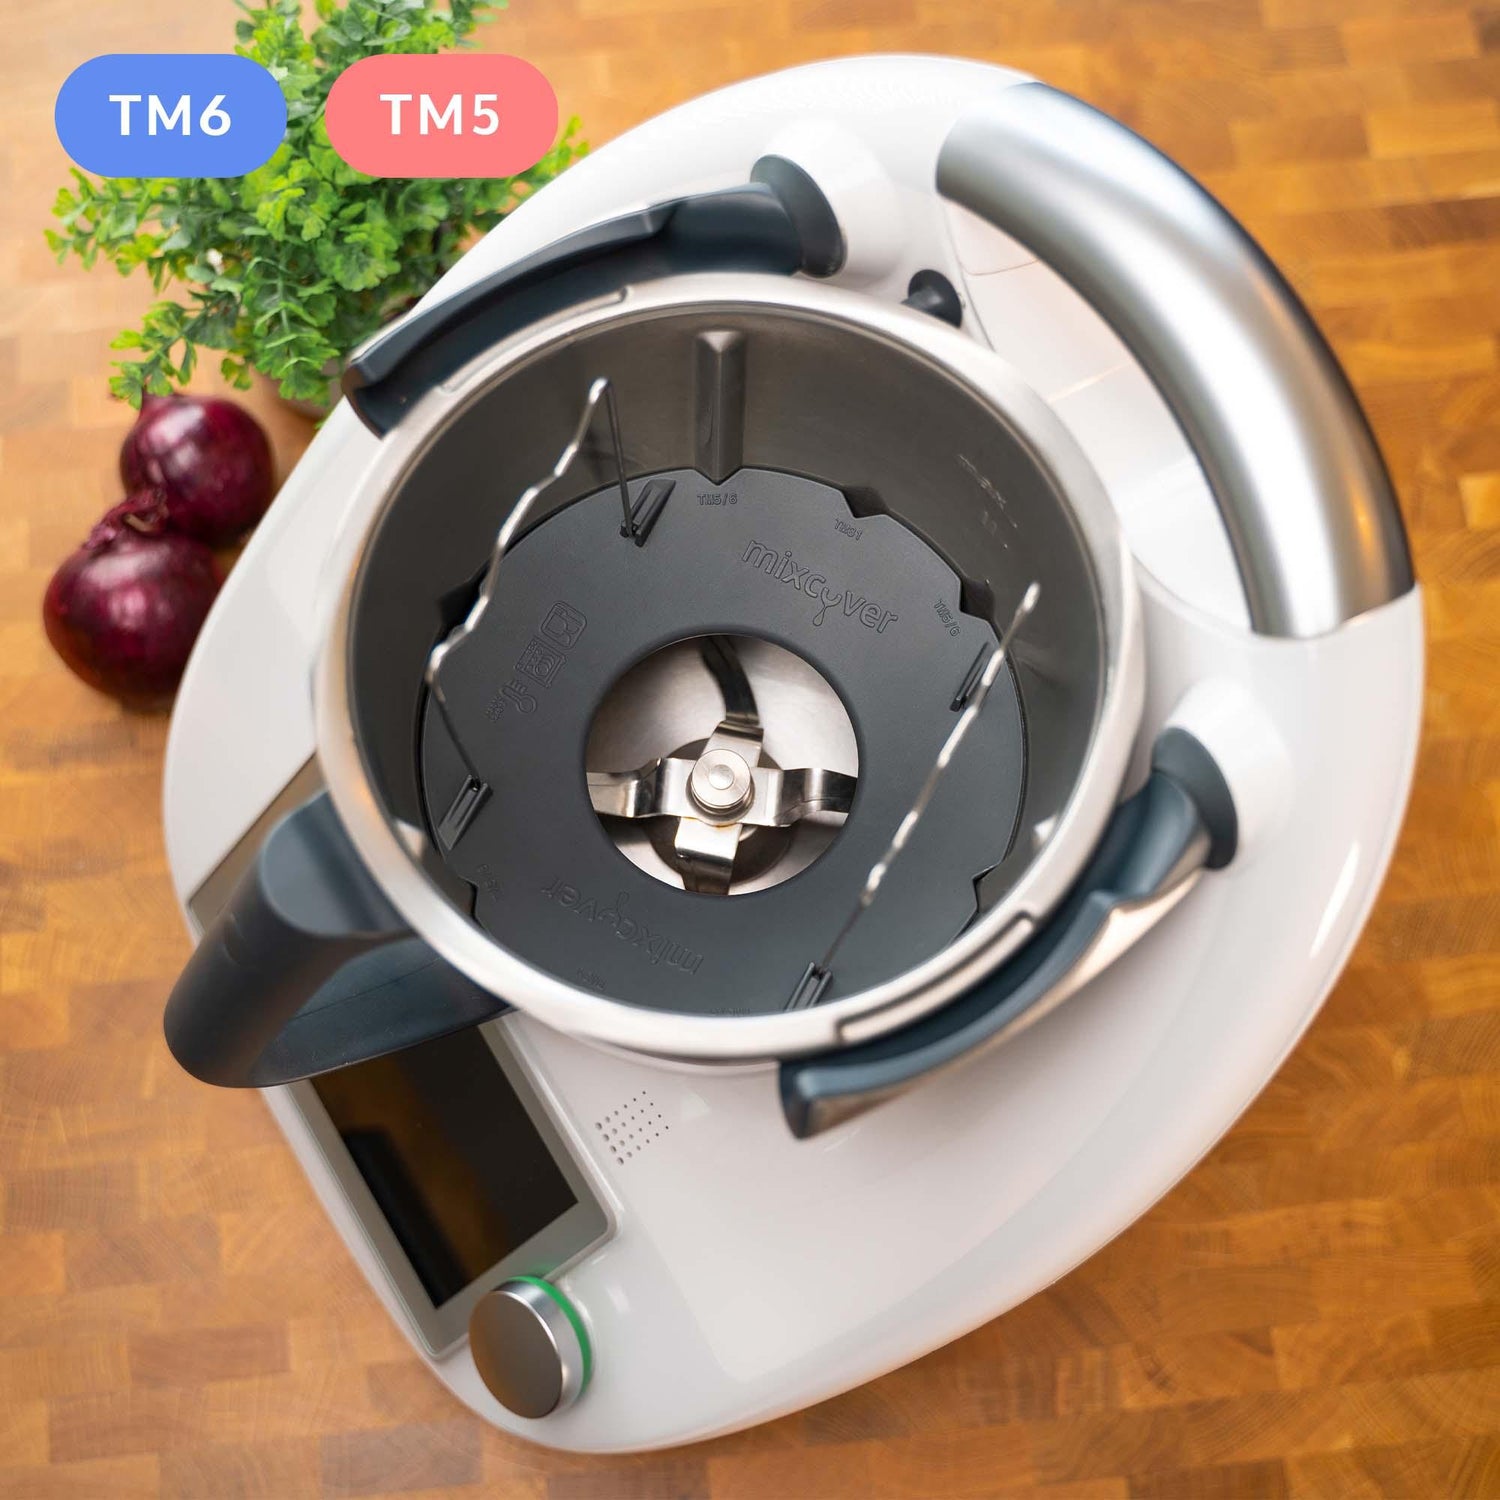 Mixcover Mélange de réduction de pot pour Thermomix TM6 TM5 Hopper